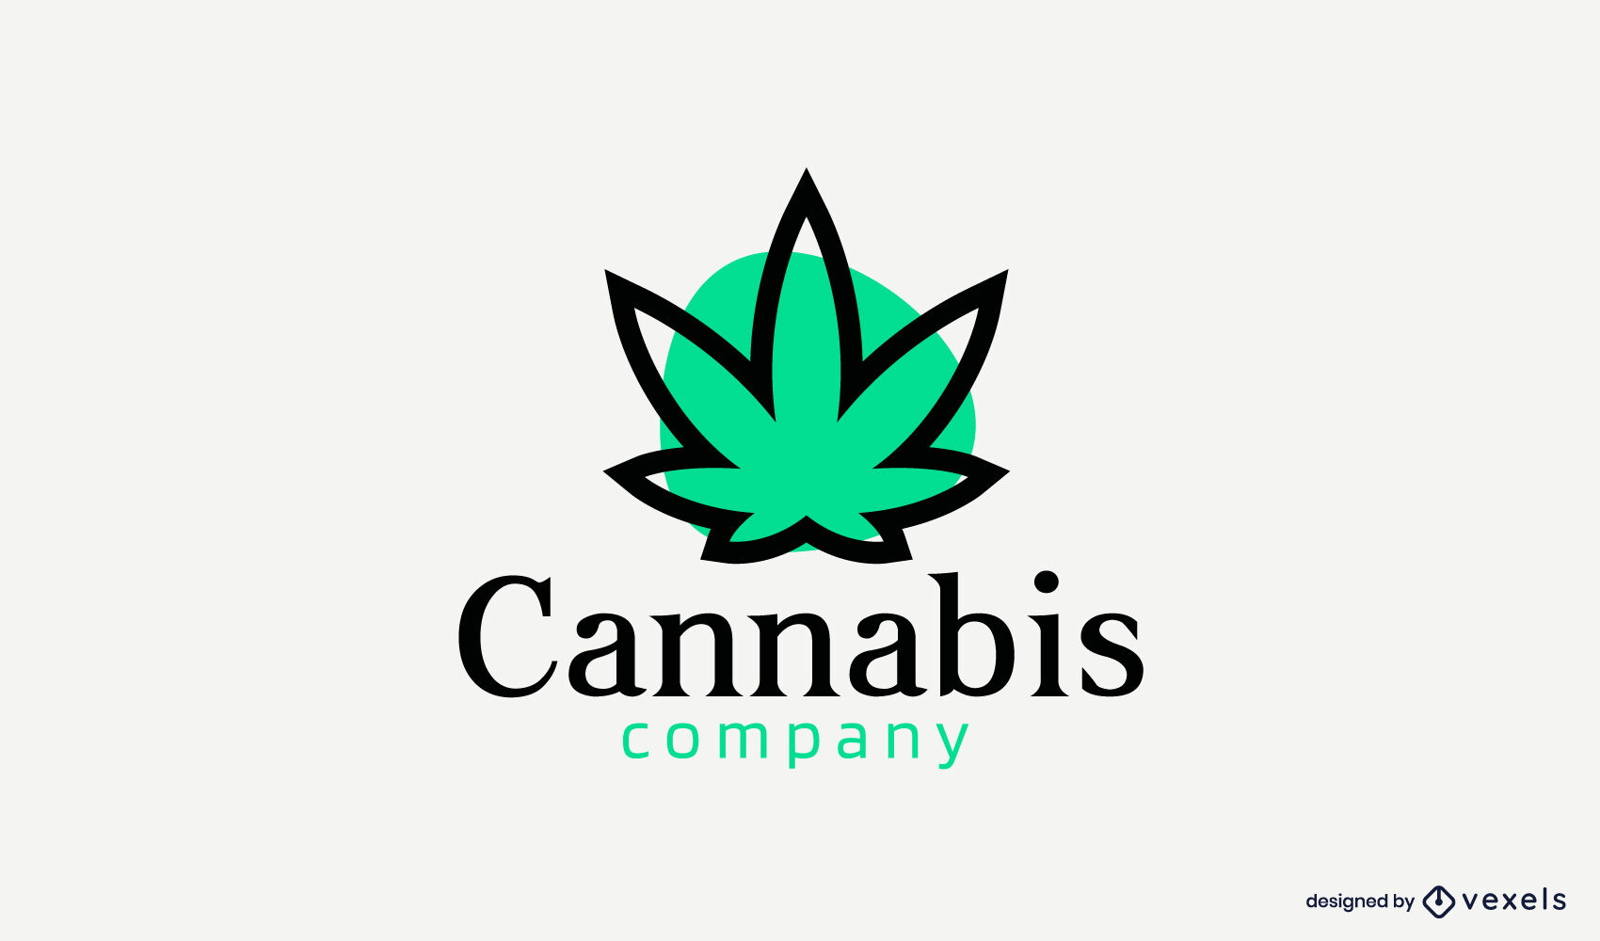 Cannabisblatt-Farbstrich-Kreis-Logo